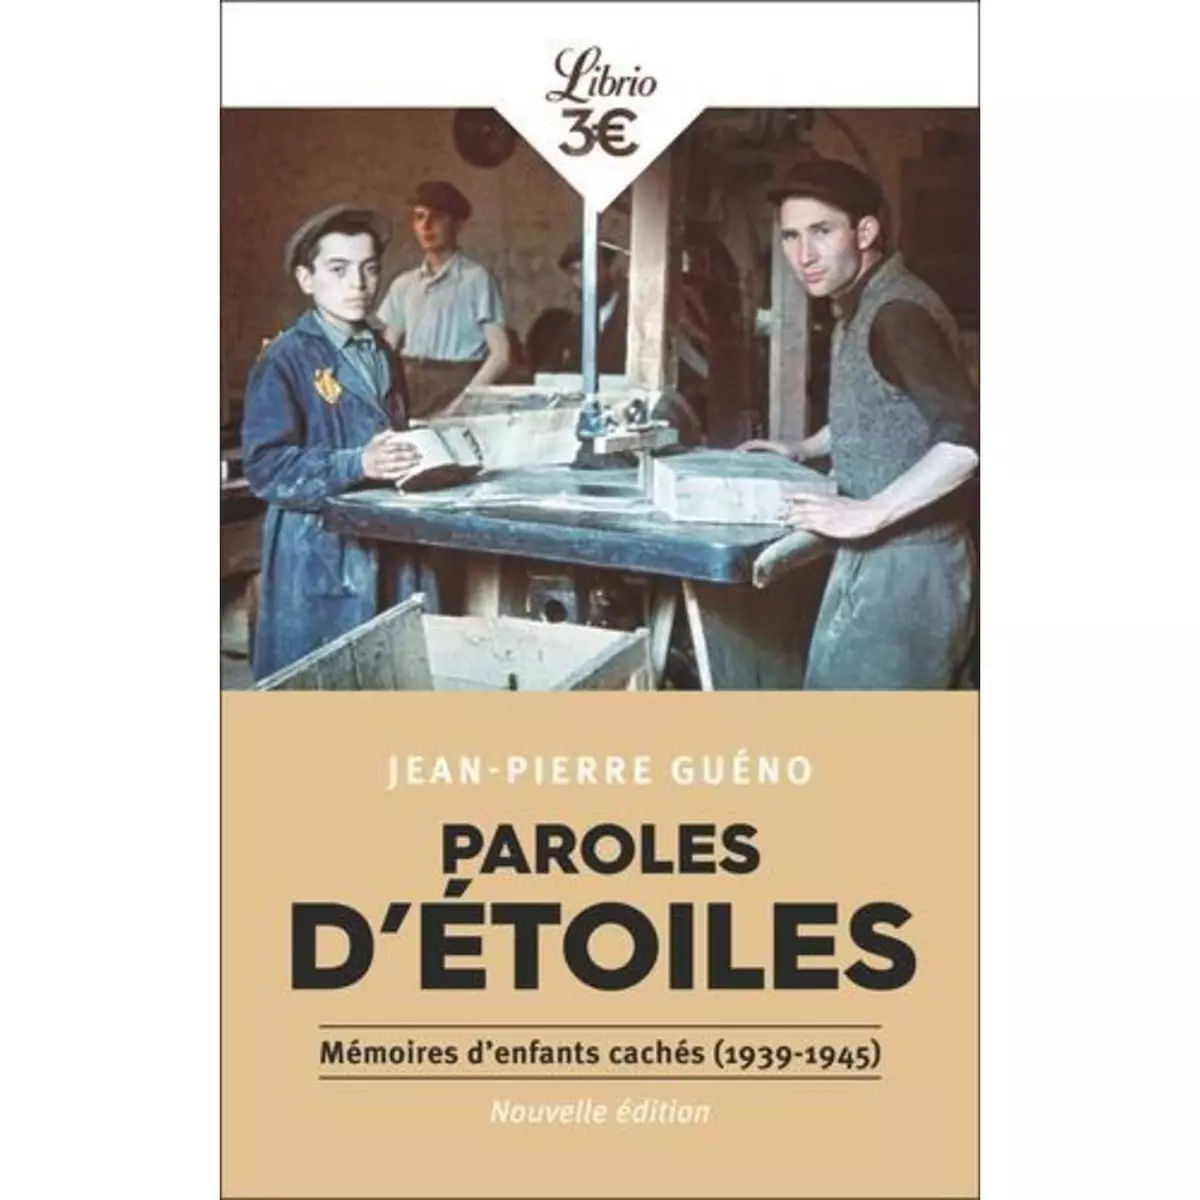  PAROLES D'ETOILES. MEMOIRES D'ENFANTS CACHES (1939-1945), Guéno Jean-Pierre